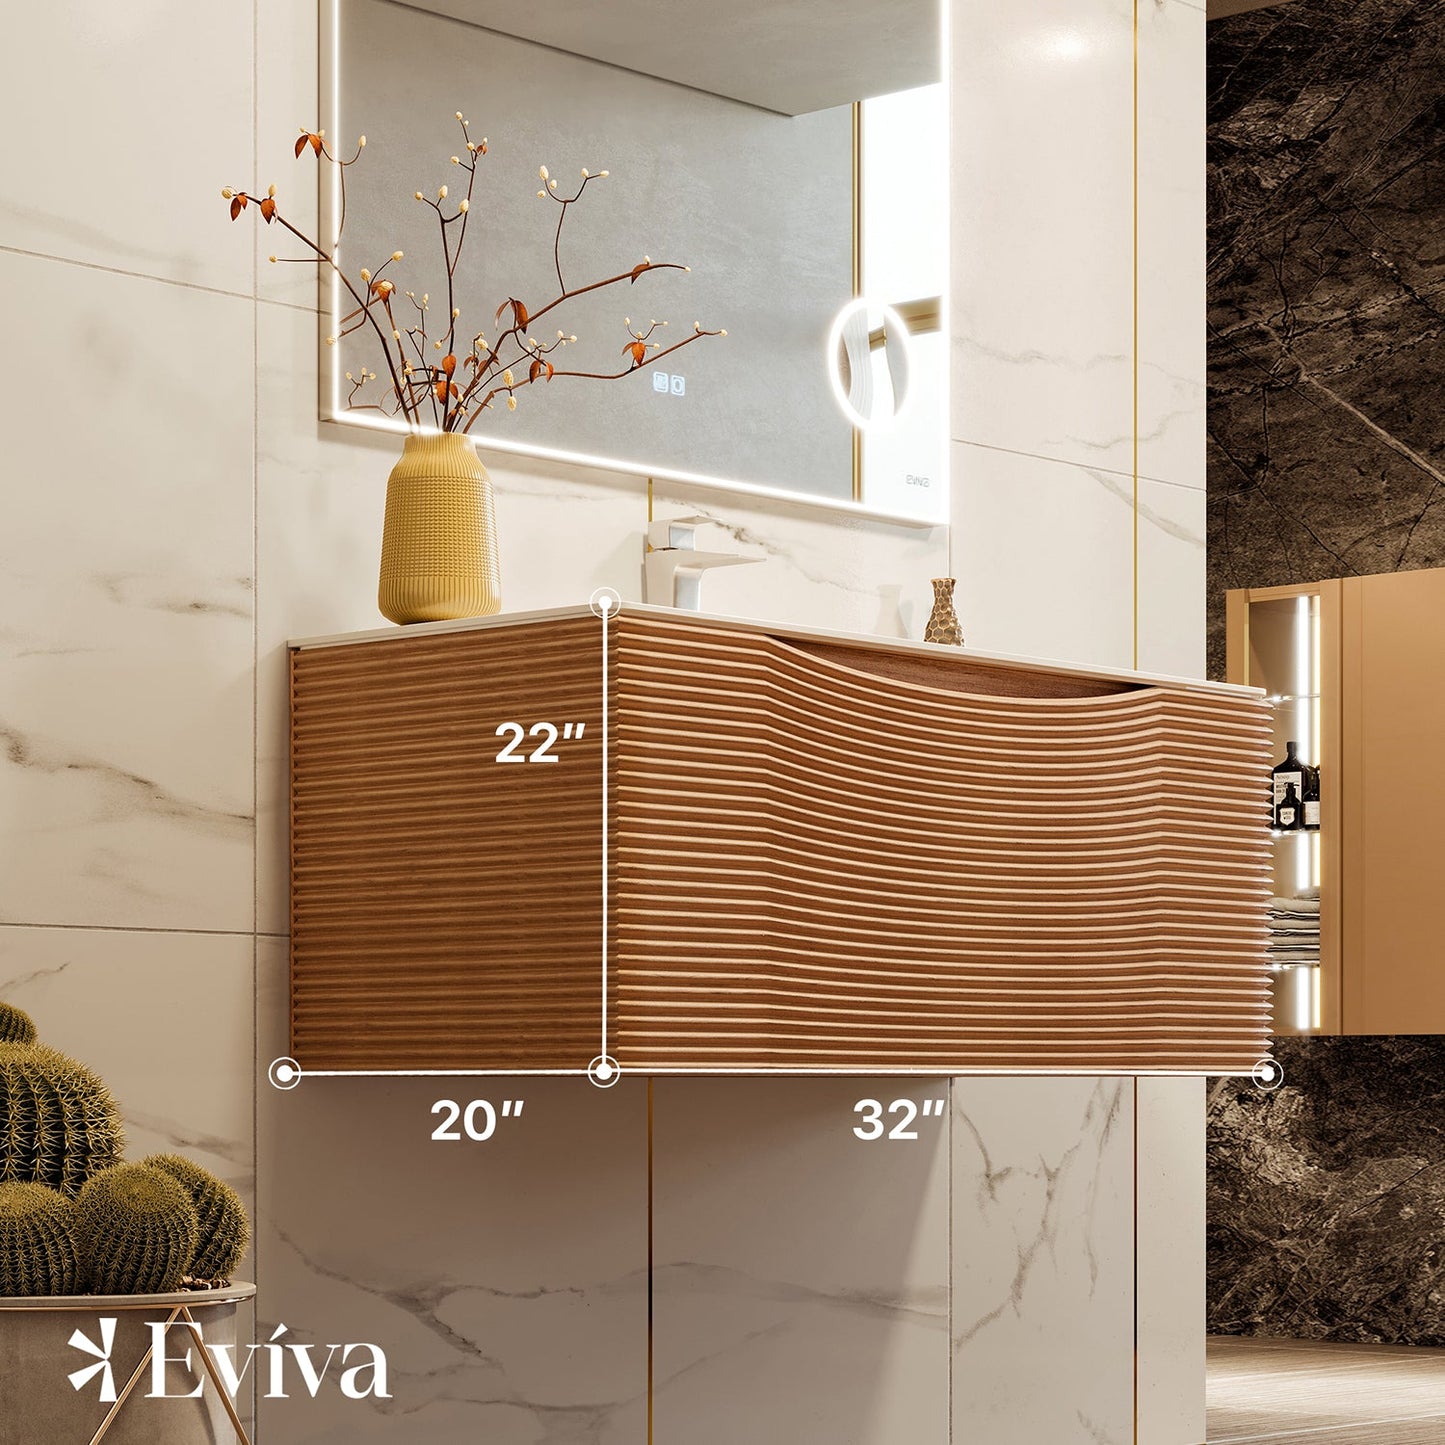 Eviva Leah 32 Inch Made in Spain Medium Oak Wall Mount Bathroom Vanity